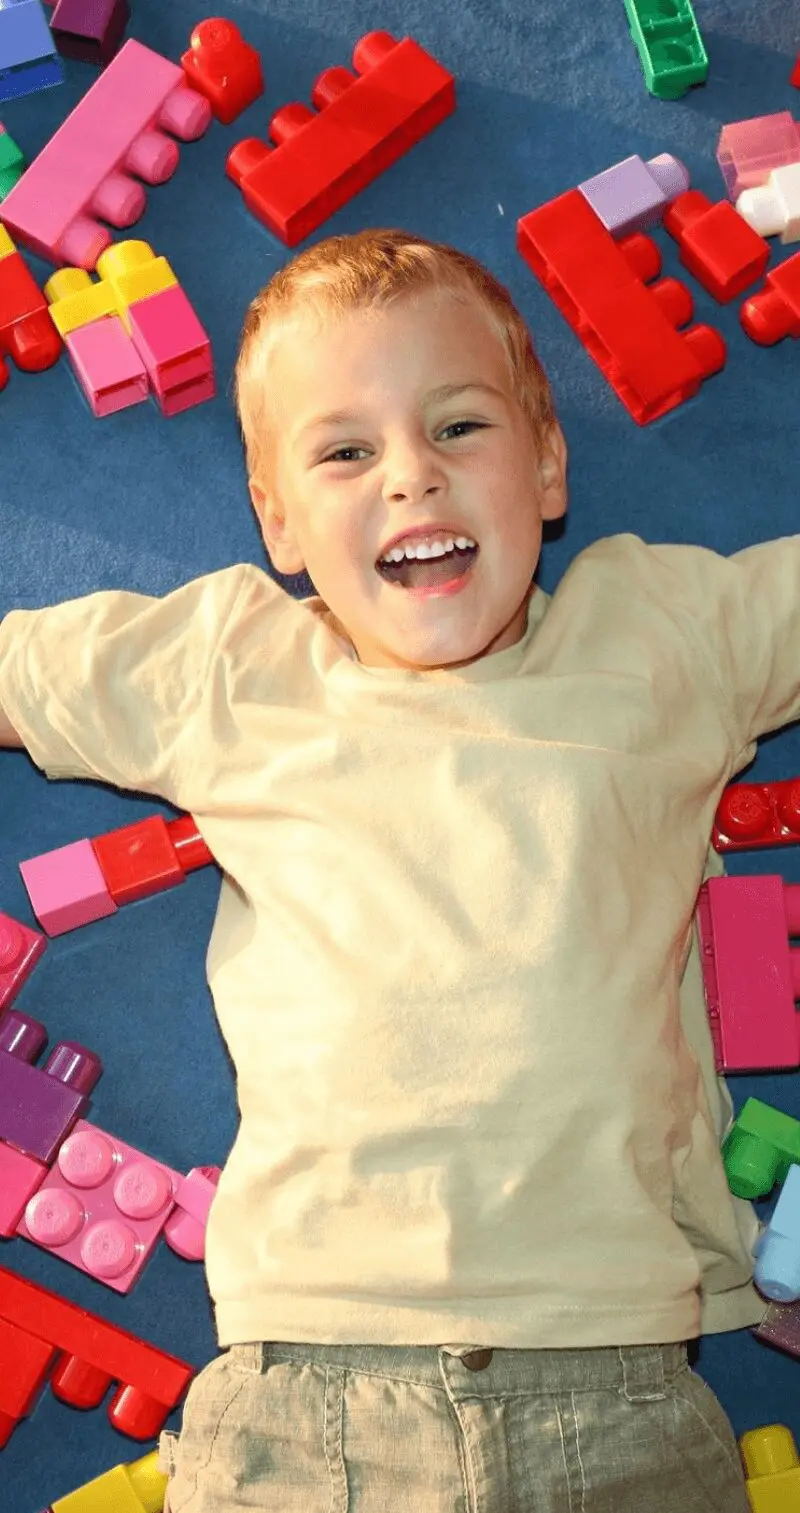 Preschool children learning toy blocks from teacher